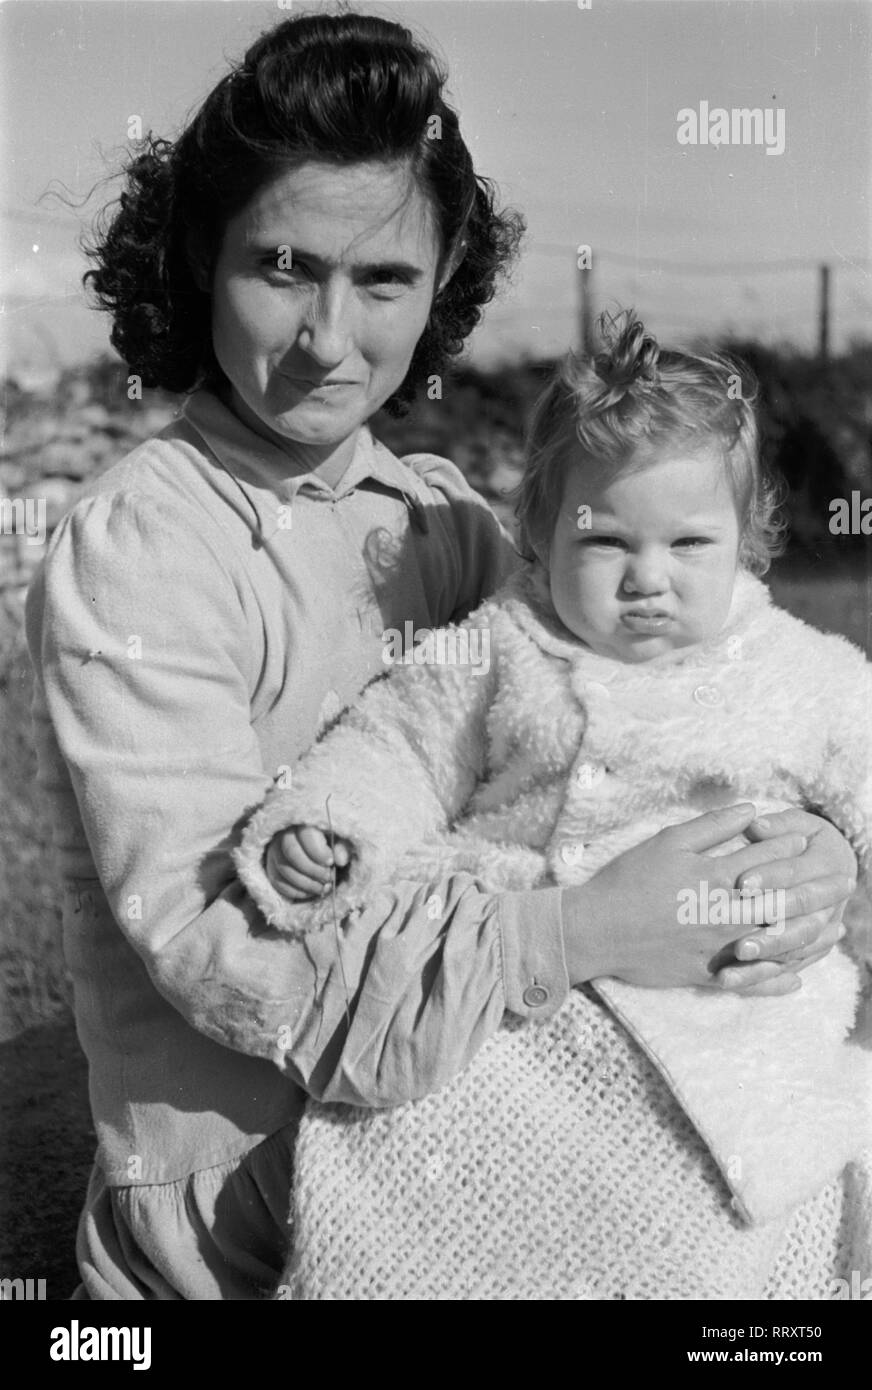 Reisen nach Rom - Italien 1950 - Junge Mutter mit Kind in Rom, Via Appia Antica. Junge Mutter mit ihrem Art in Rom, Italien. Foto Erich Andres Stockfoto